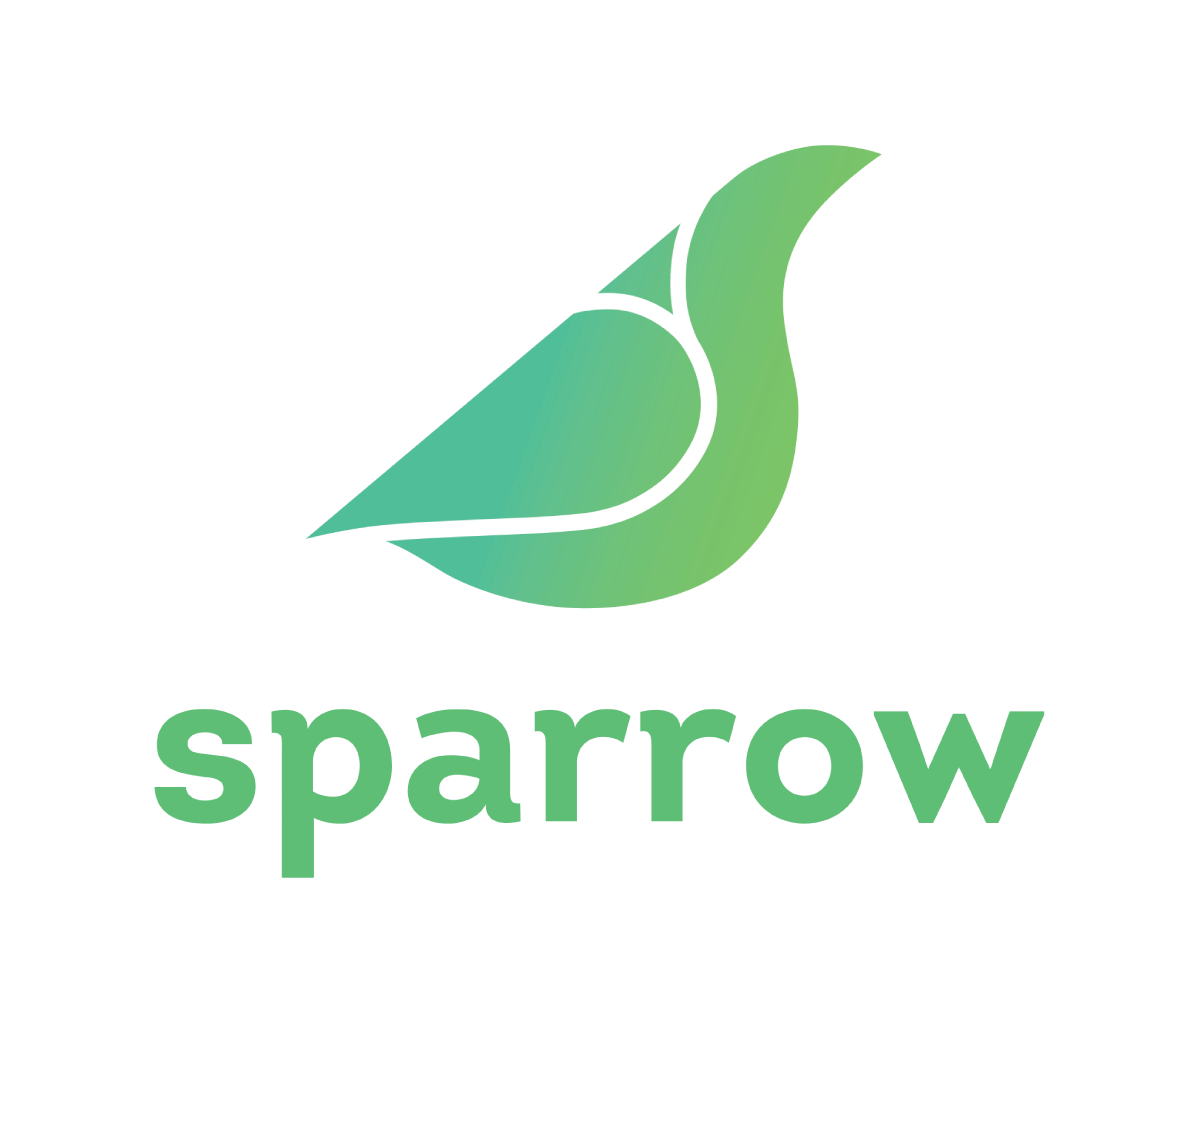 sparrow fintech logo